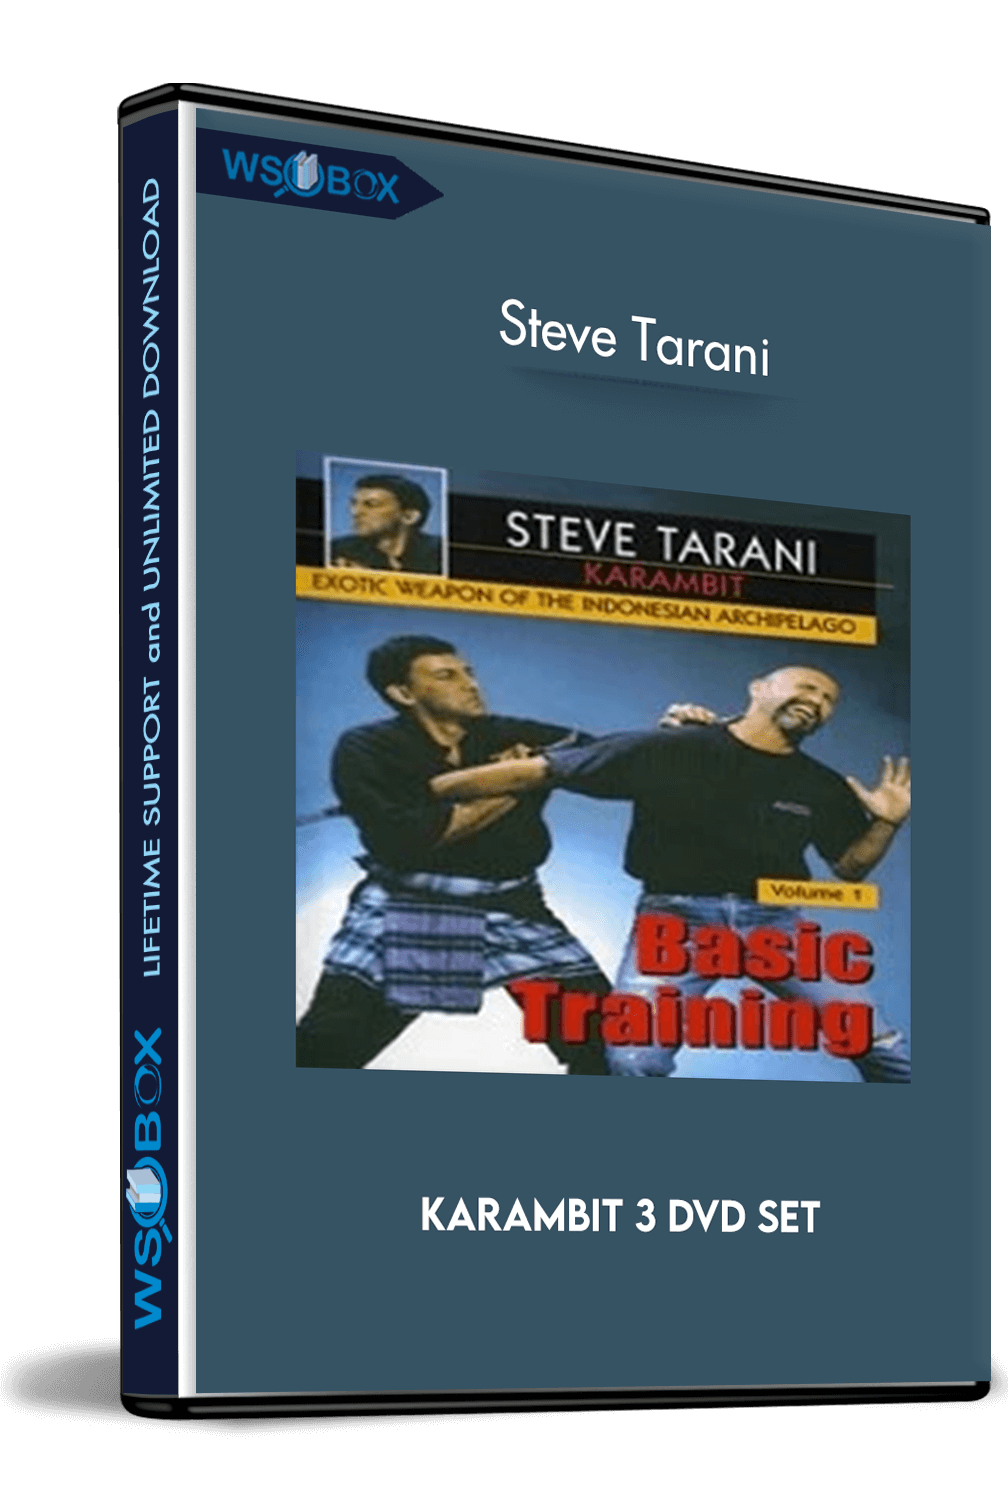 karambit-3-dvd-set-steve-tarani